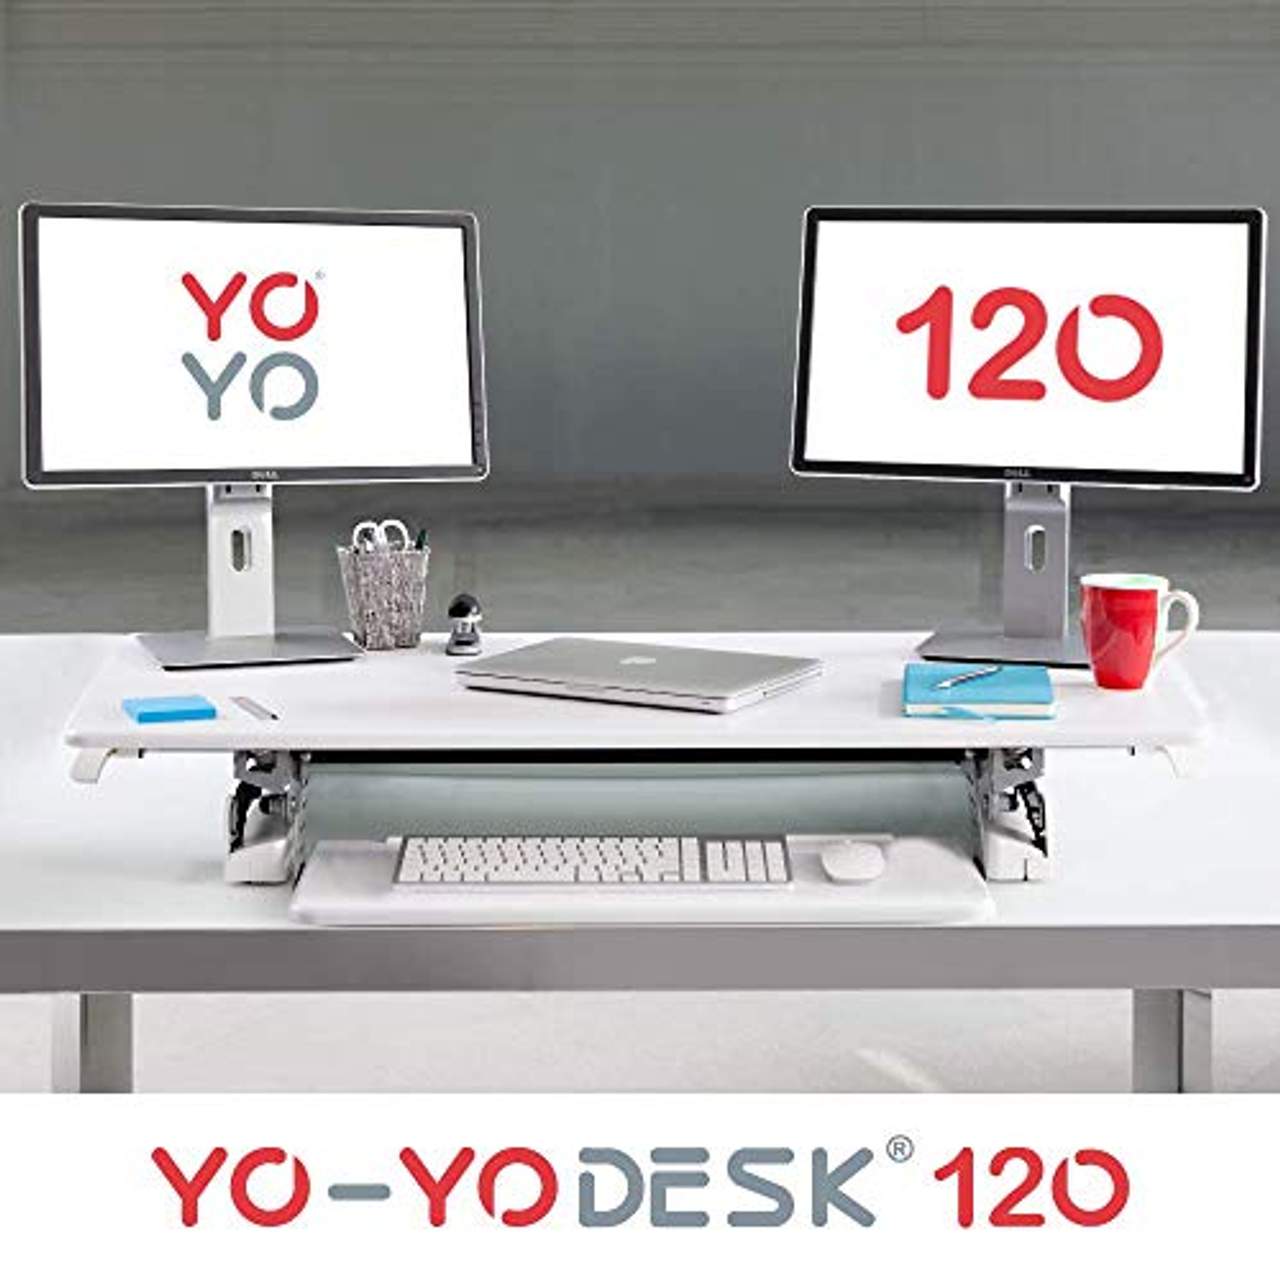 Yo-Yo DESK 120 für Ihren gesunden und produktiven Steharbeitsplatz